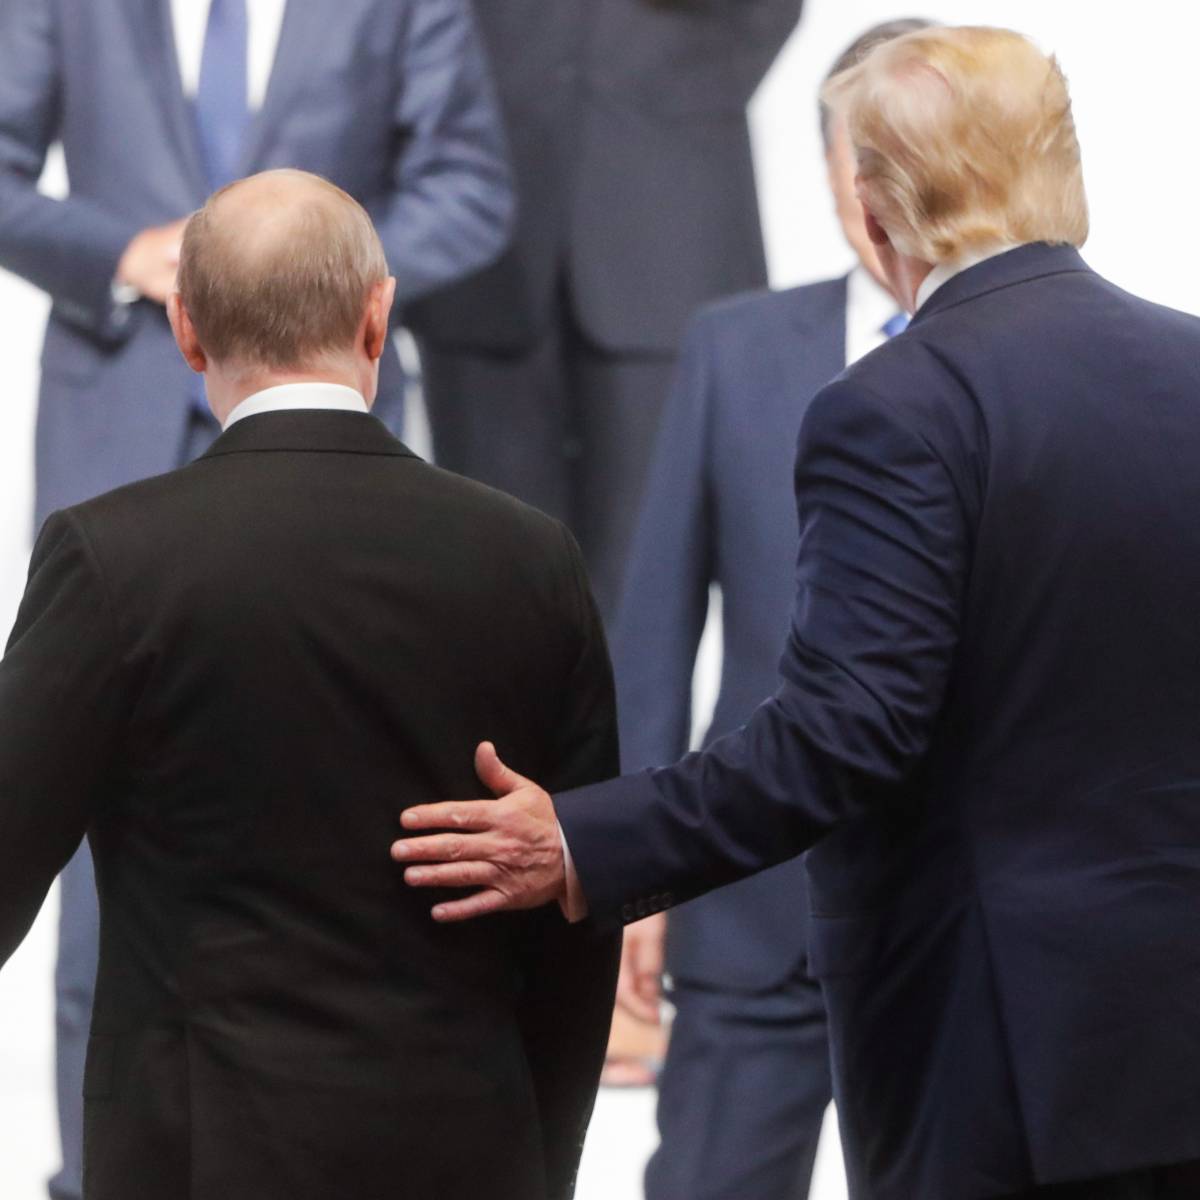 Каковы личные отношения между Путиным и Трампом?